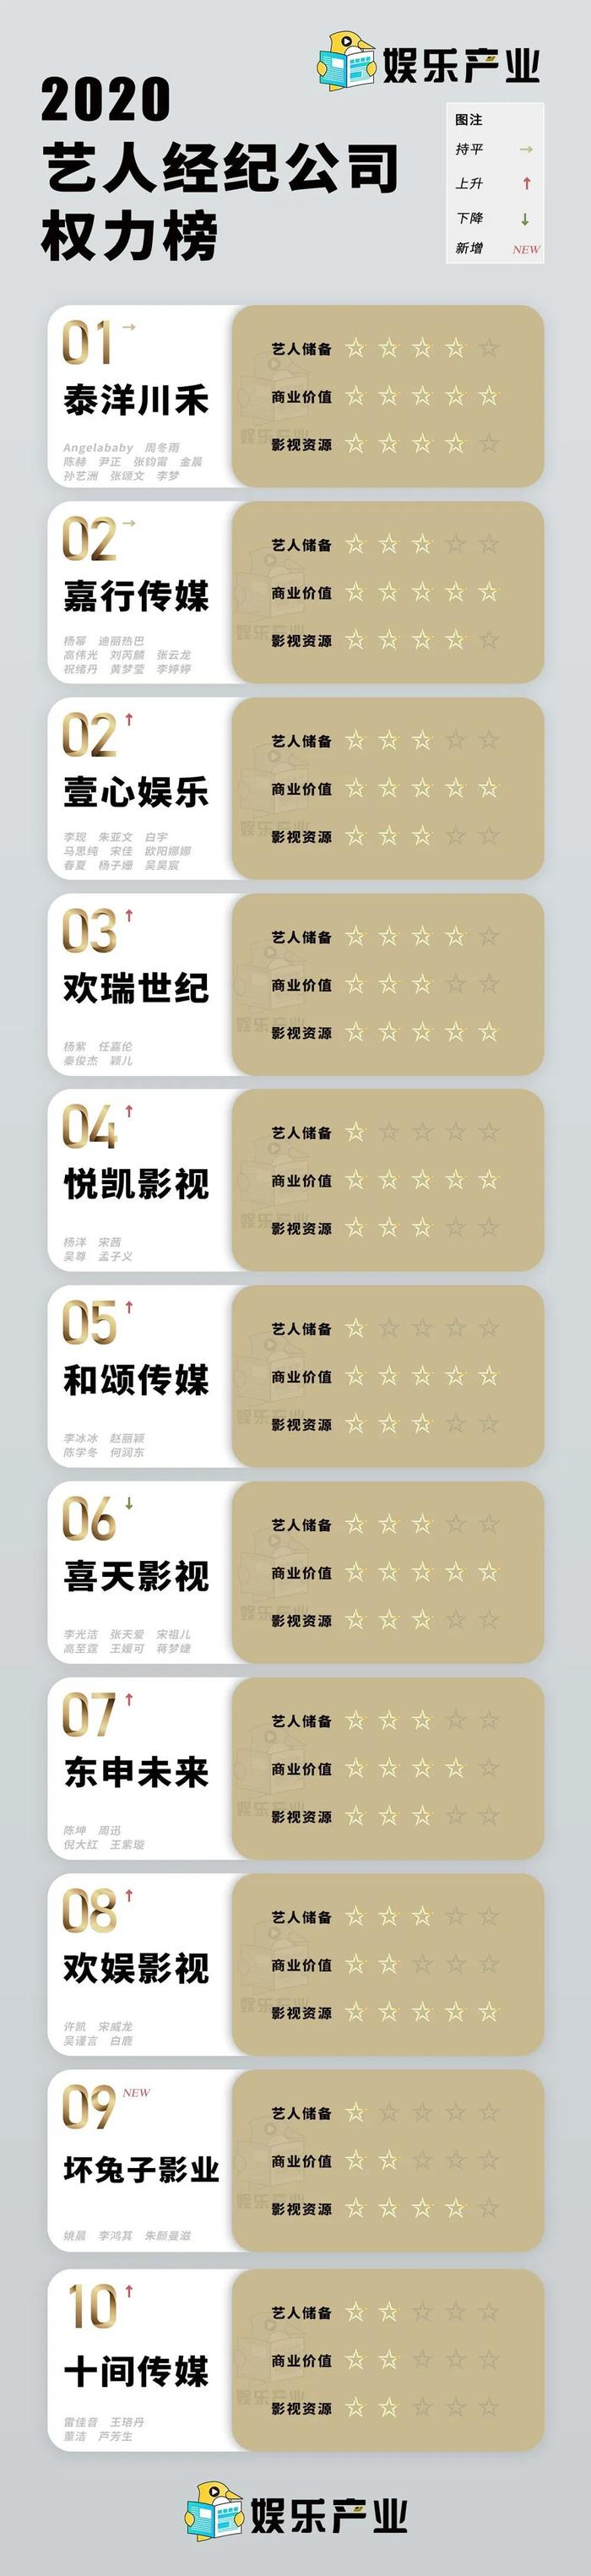 2019-2020艺人经纪公司权力榜TOP50：欢瑞悦凯排名飞升，合伙人制恐成常态